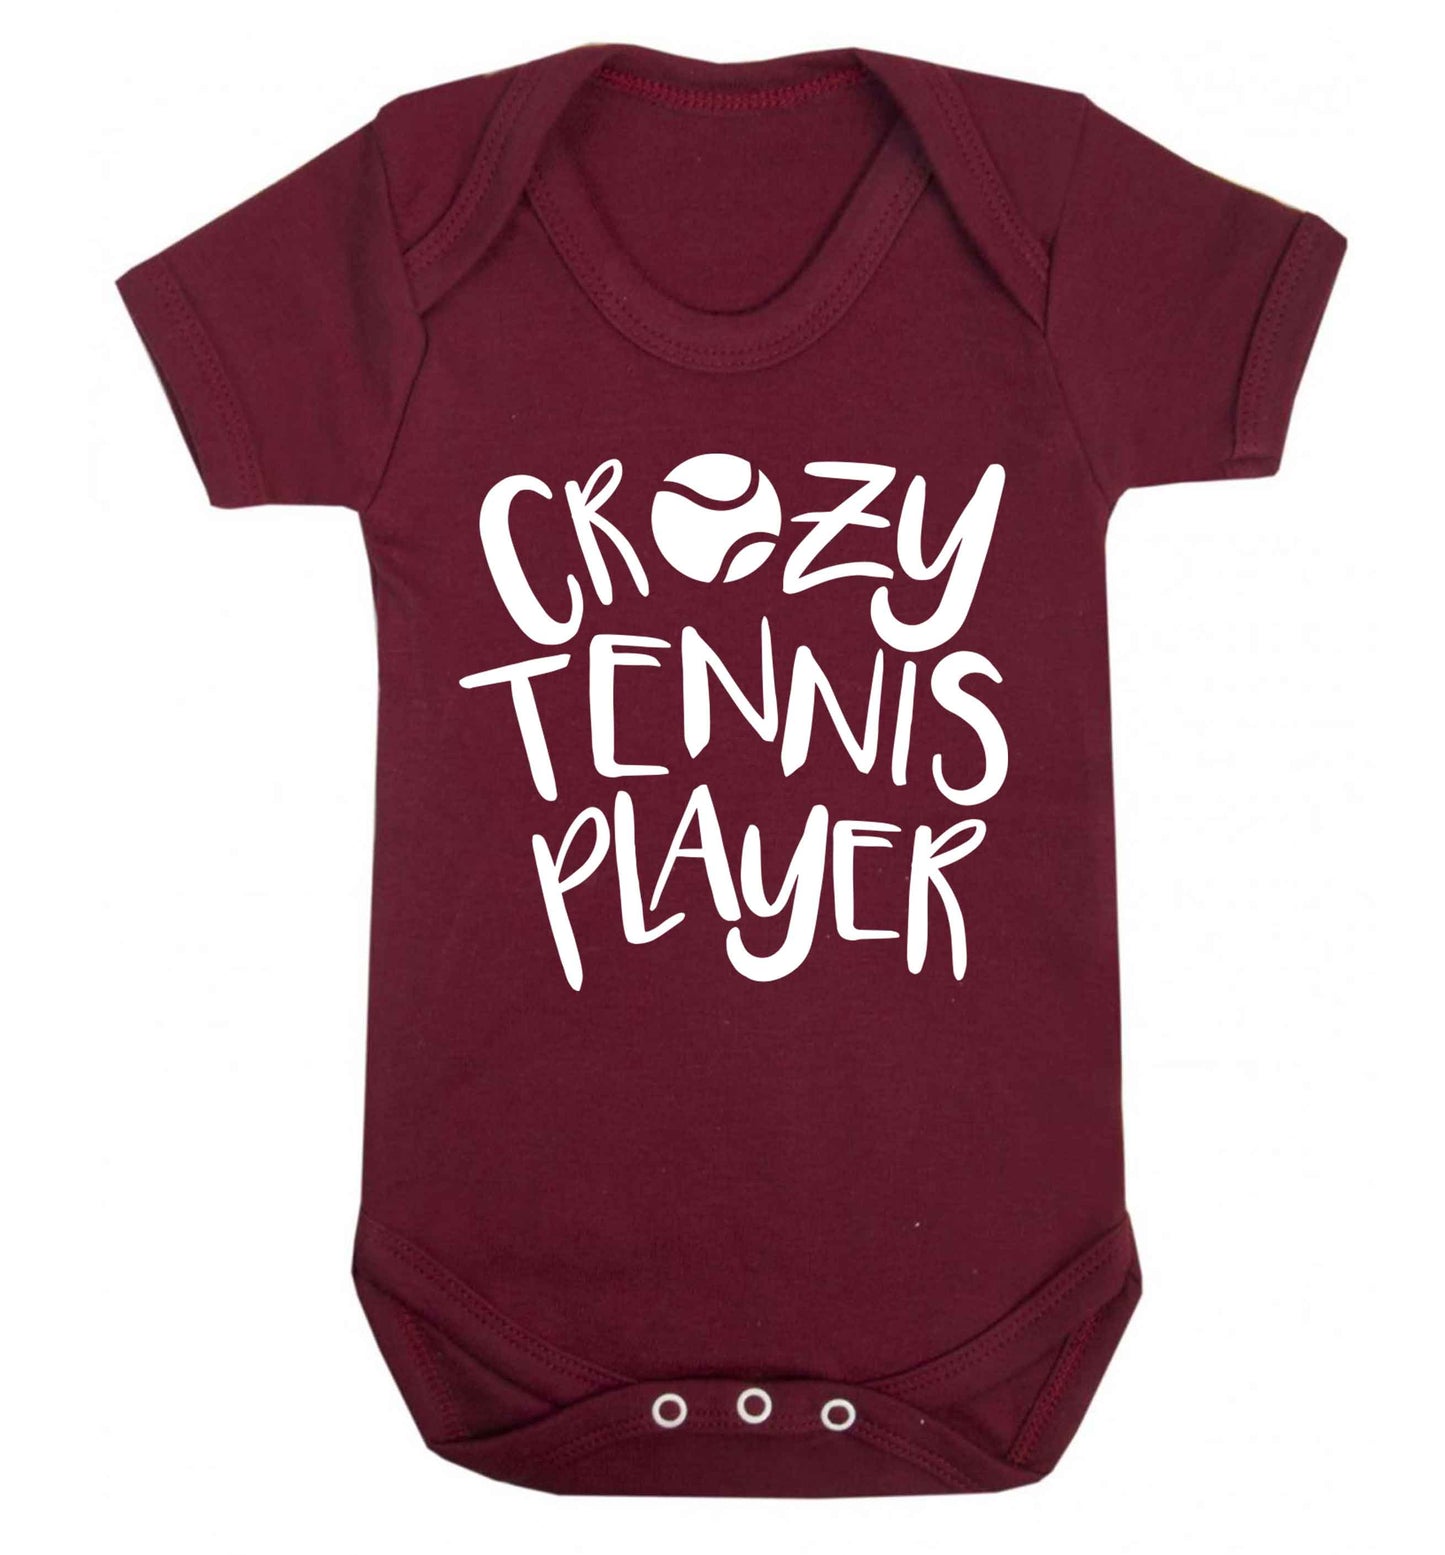 Crazy tennis player Baby Vest maroon 18-24 months